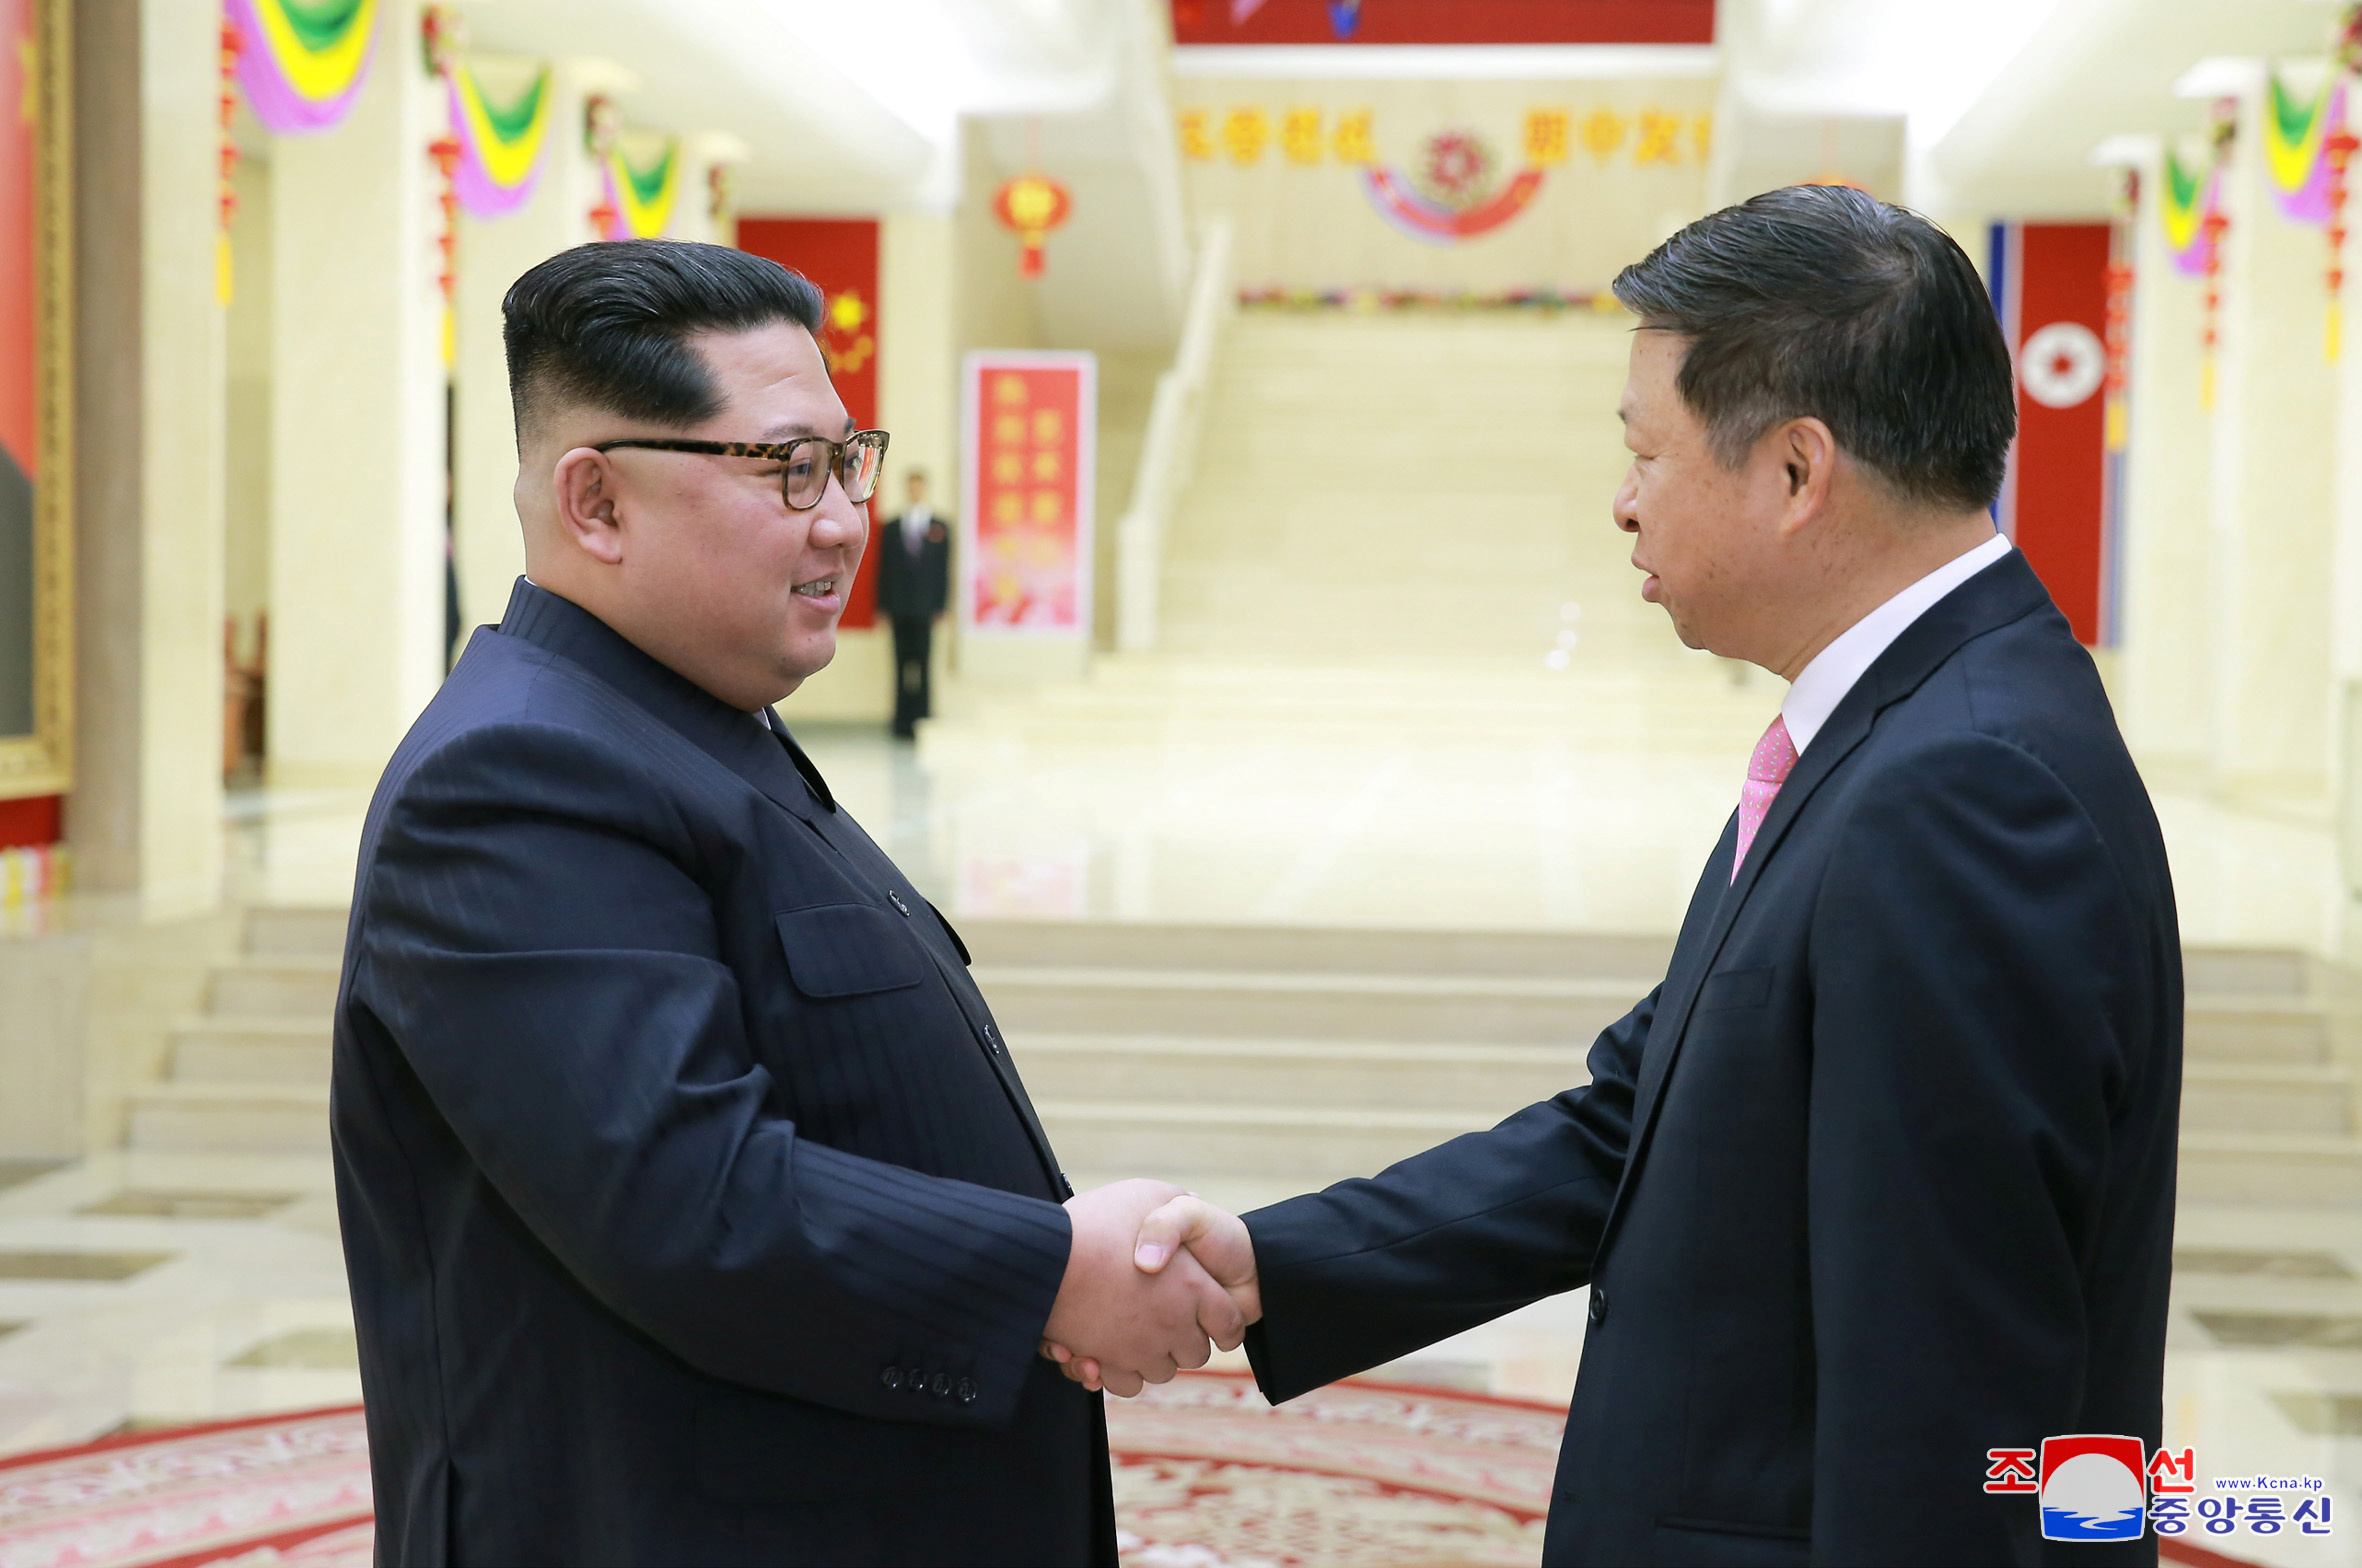 زعيم كوريا الشمالية يلتقى مسئول بالحزب الشيوعى